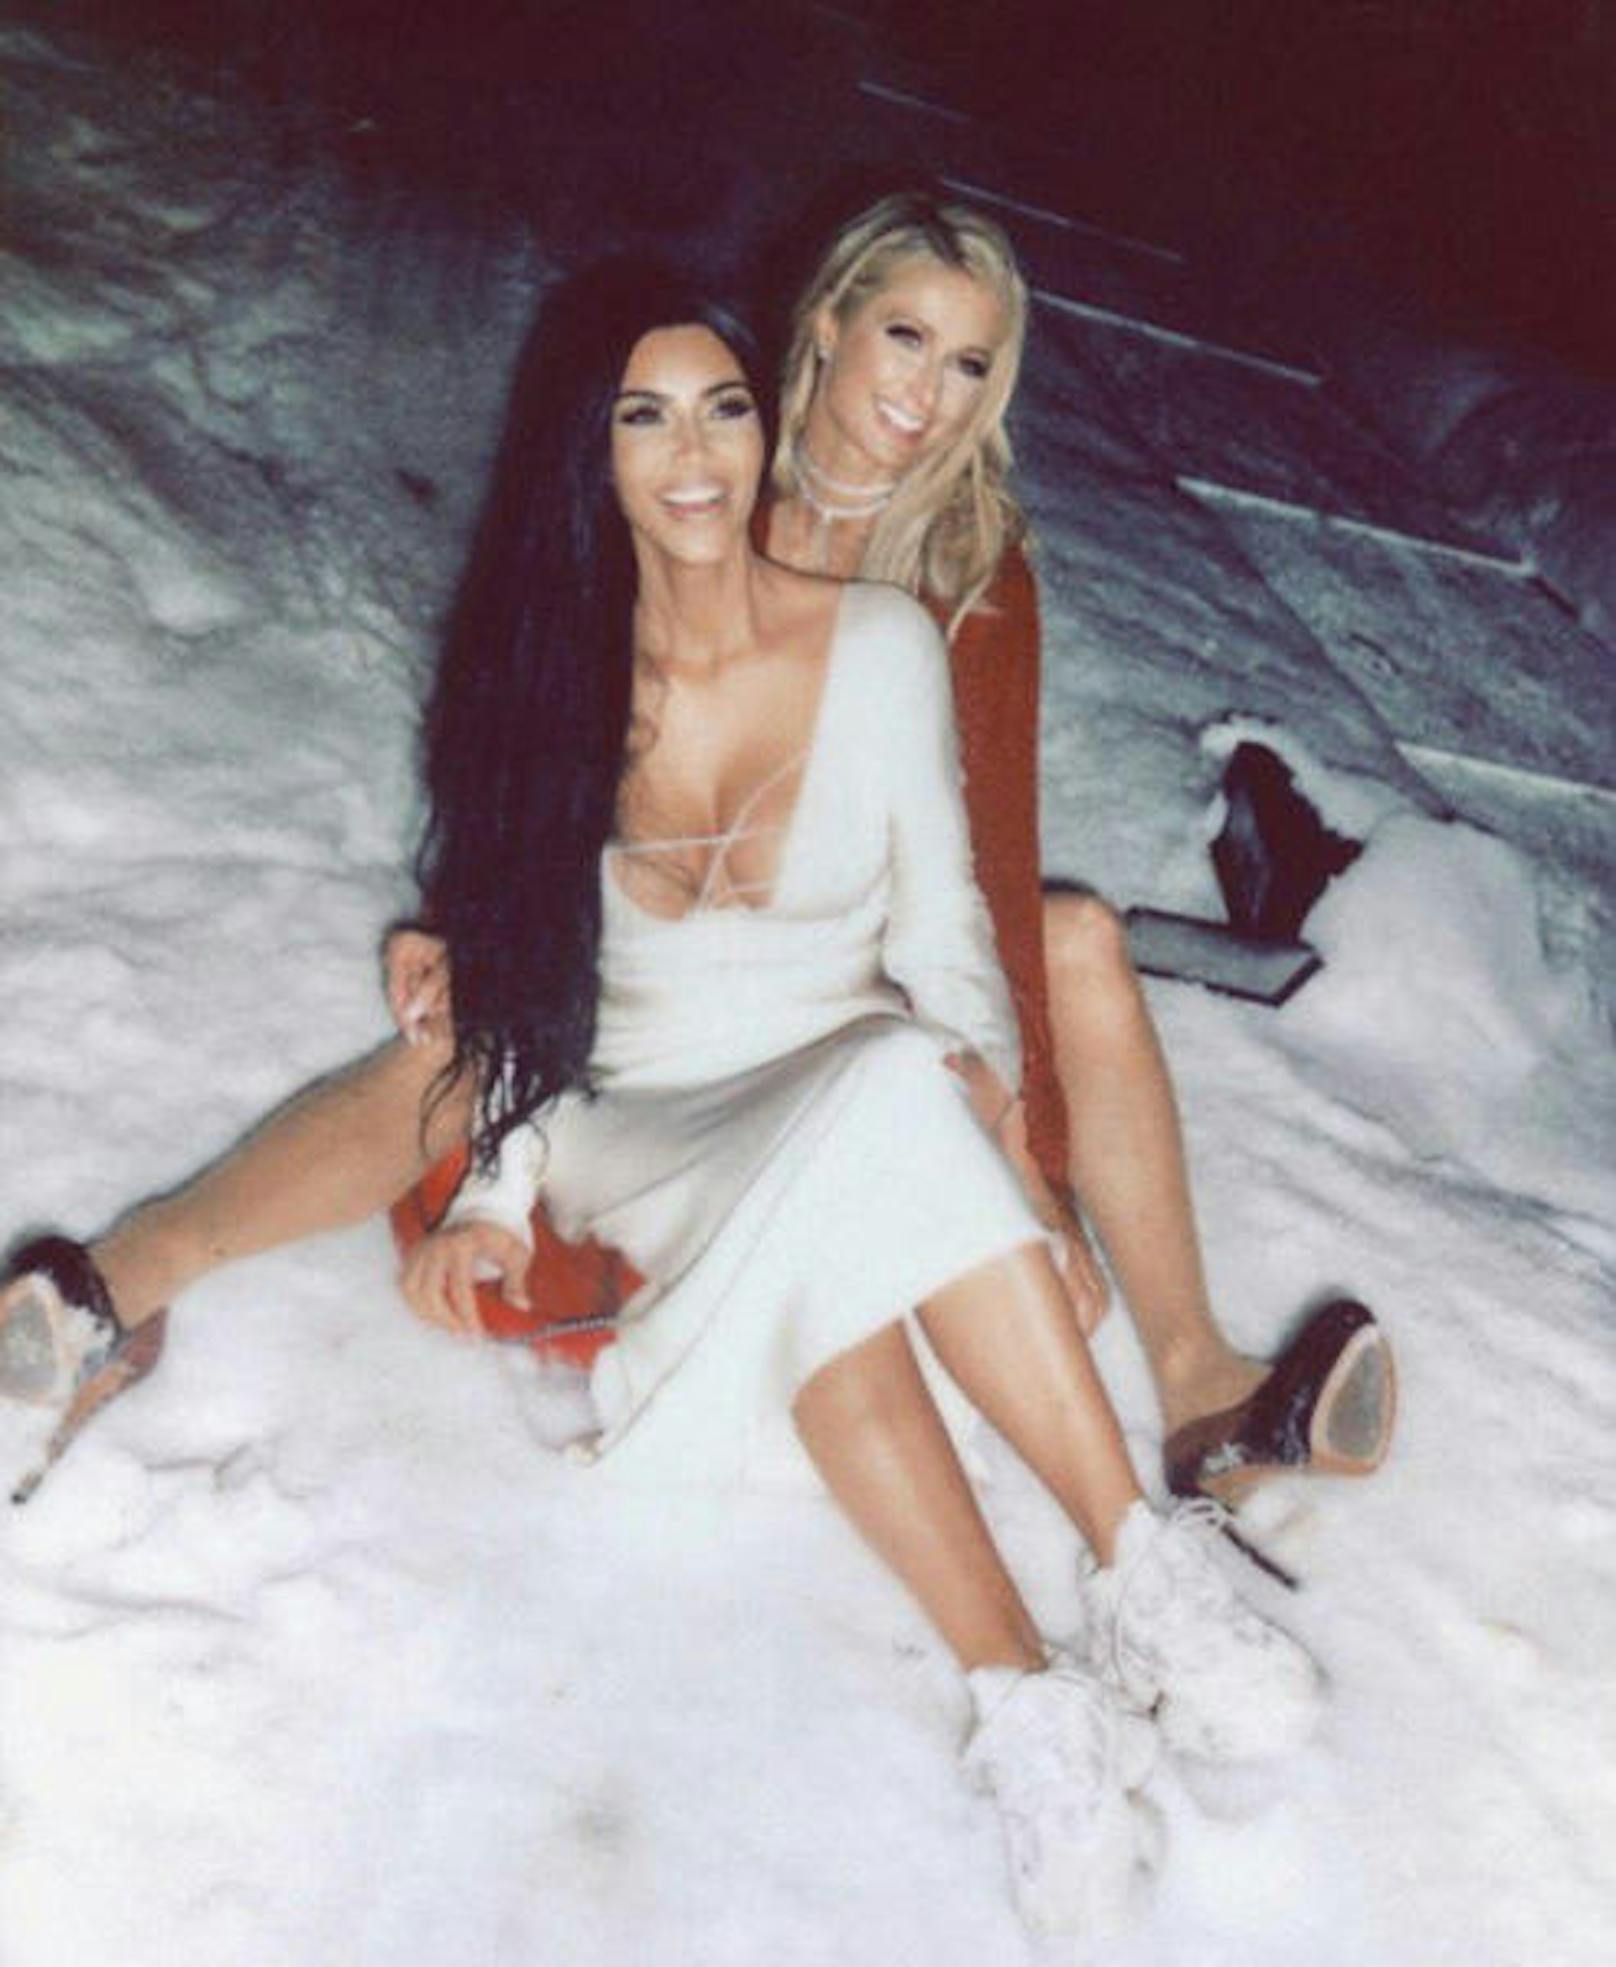 02.01.2018: Kleid und High Heels zum Bobfahren? Nun, es gibt sichere bessere Bekleidung für den Wintersport, aber wahrscheinlich ist die Idee zum Rodeln ganz spontan bei einer Feier entstanden. Viel wichtiger: Paris Hilton und Kim Kardashian vertragen sich wieder. Schön, oder?